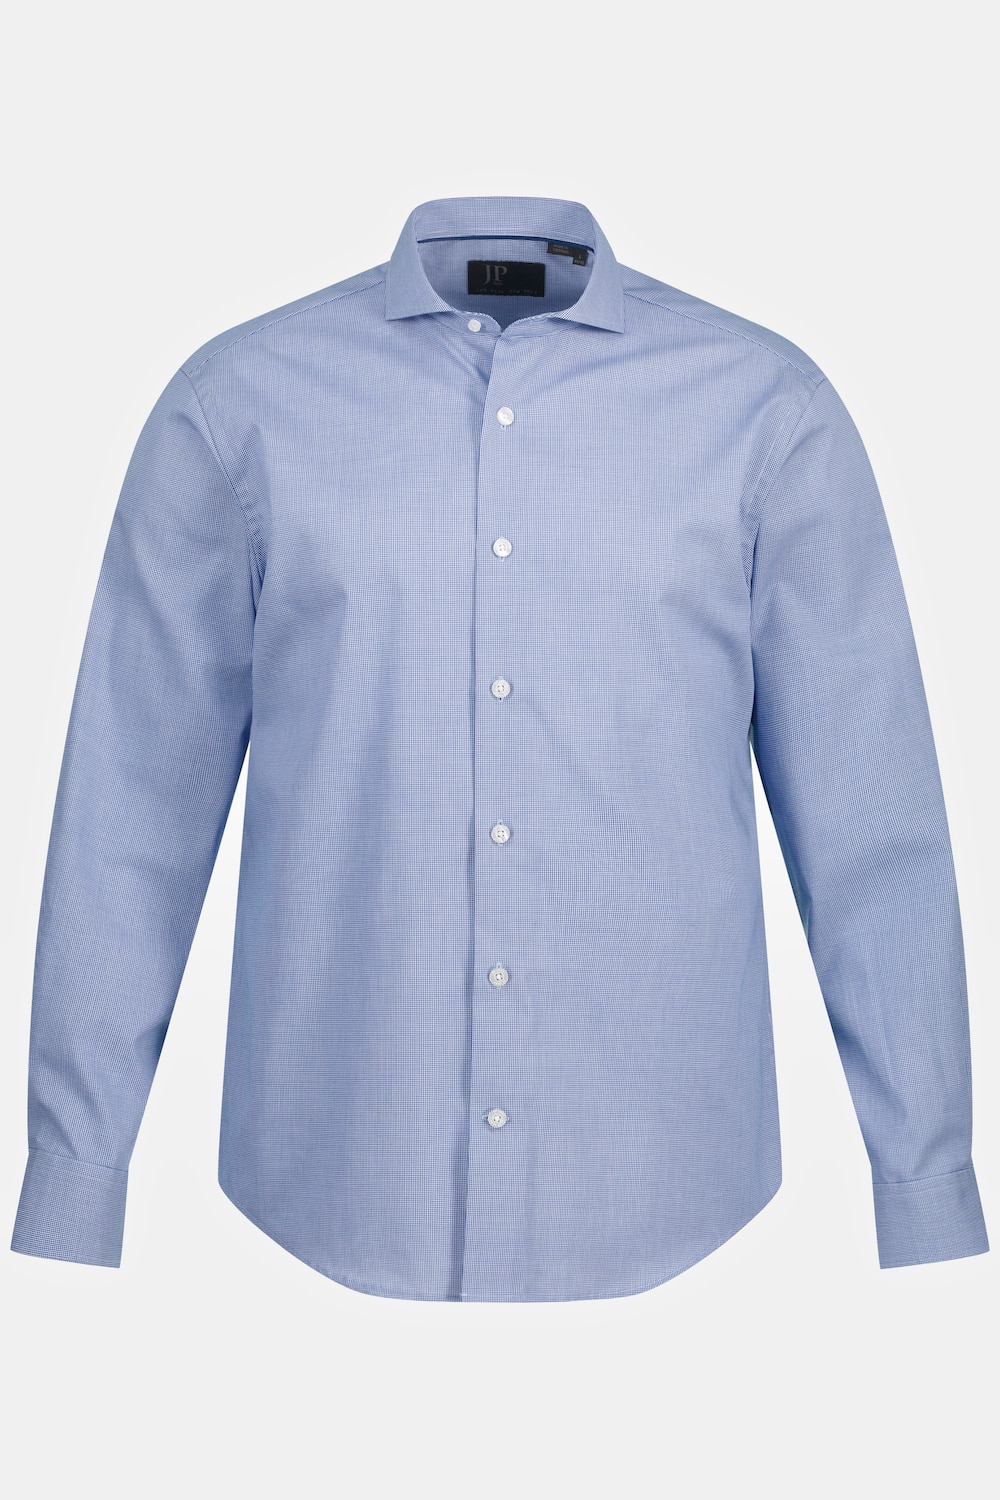 Grote Maten Overhemd, Heren, blauw, Maat: XXL, Katoen, JP1880